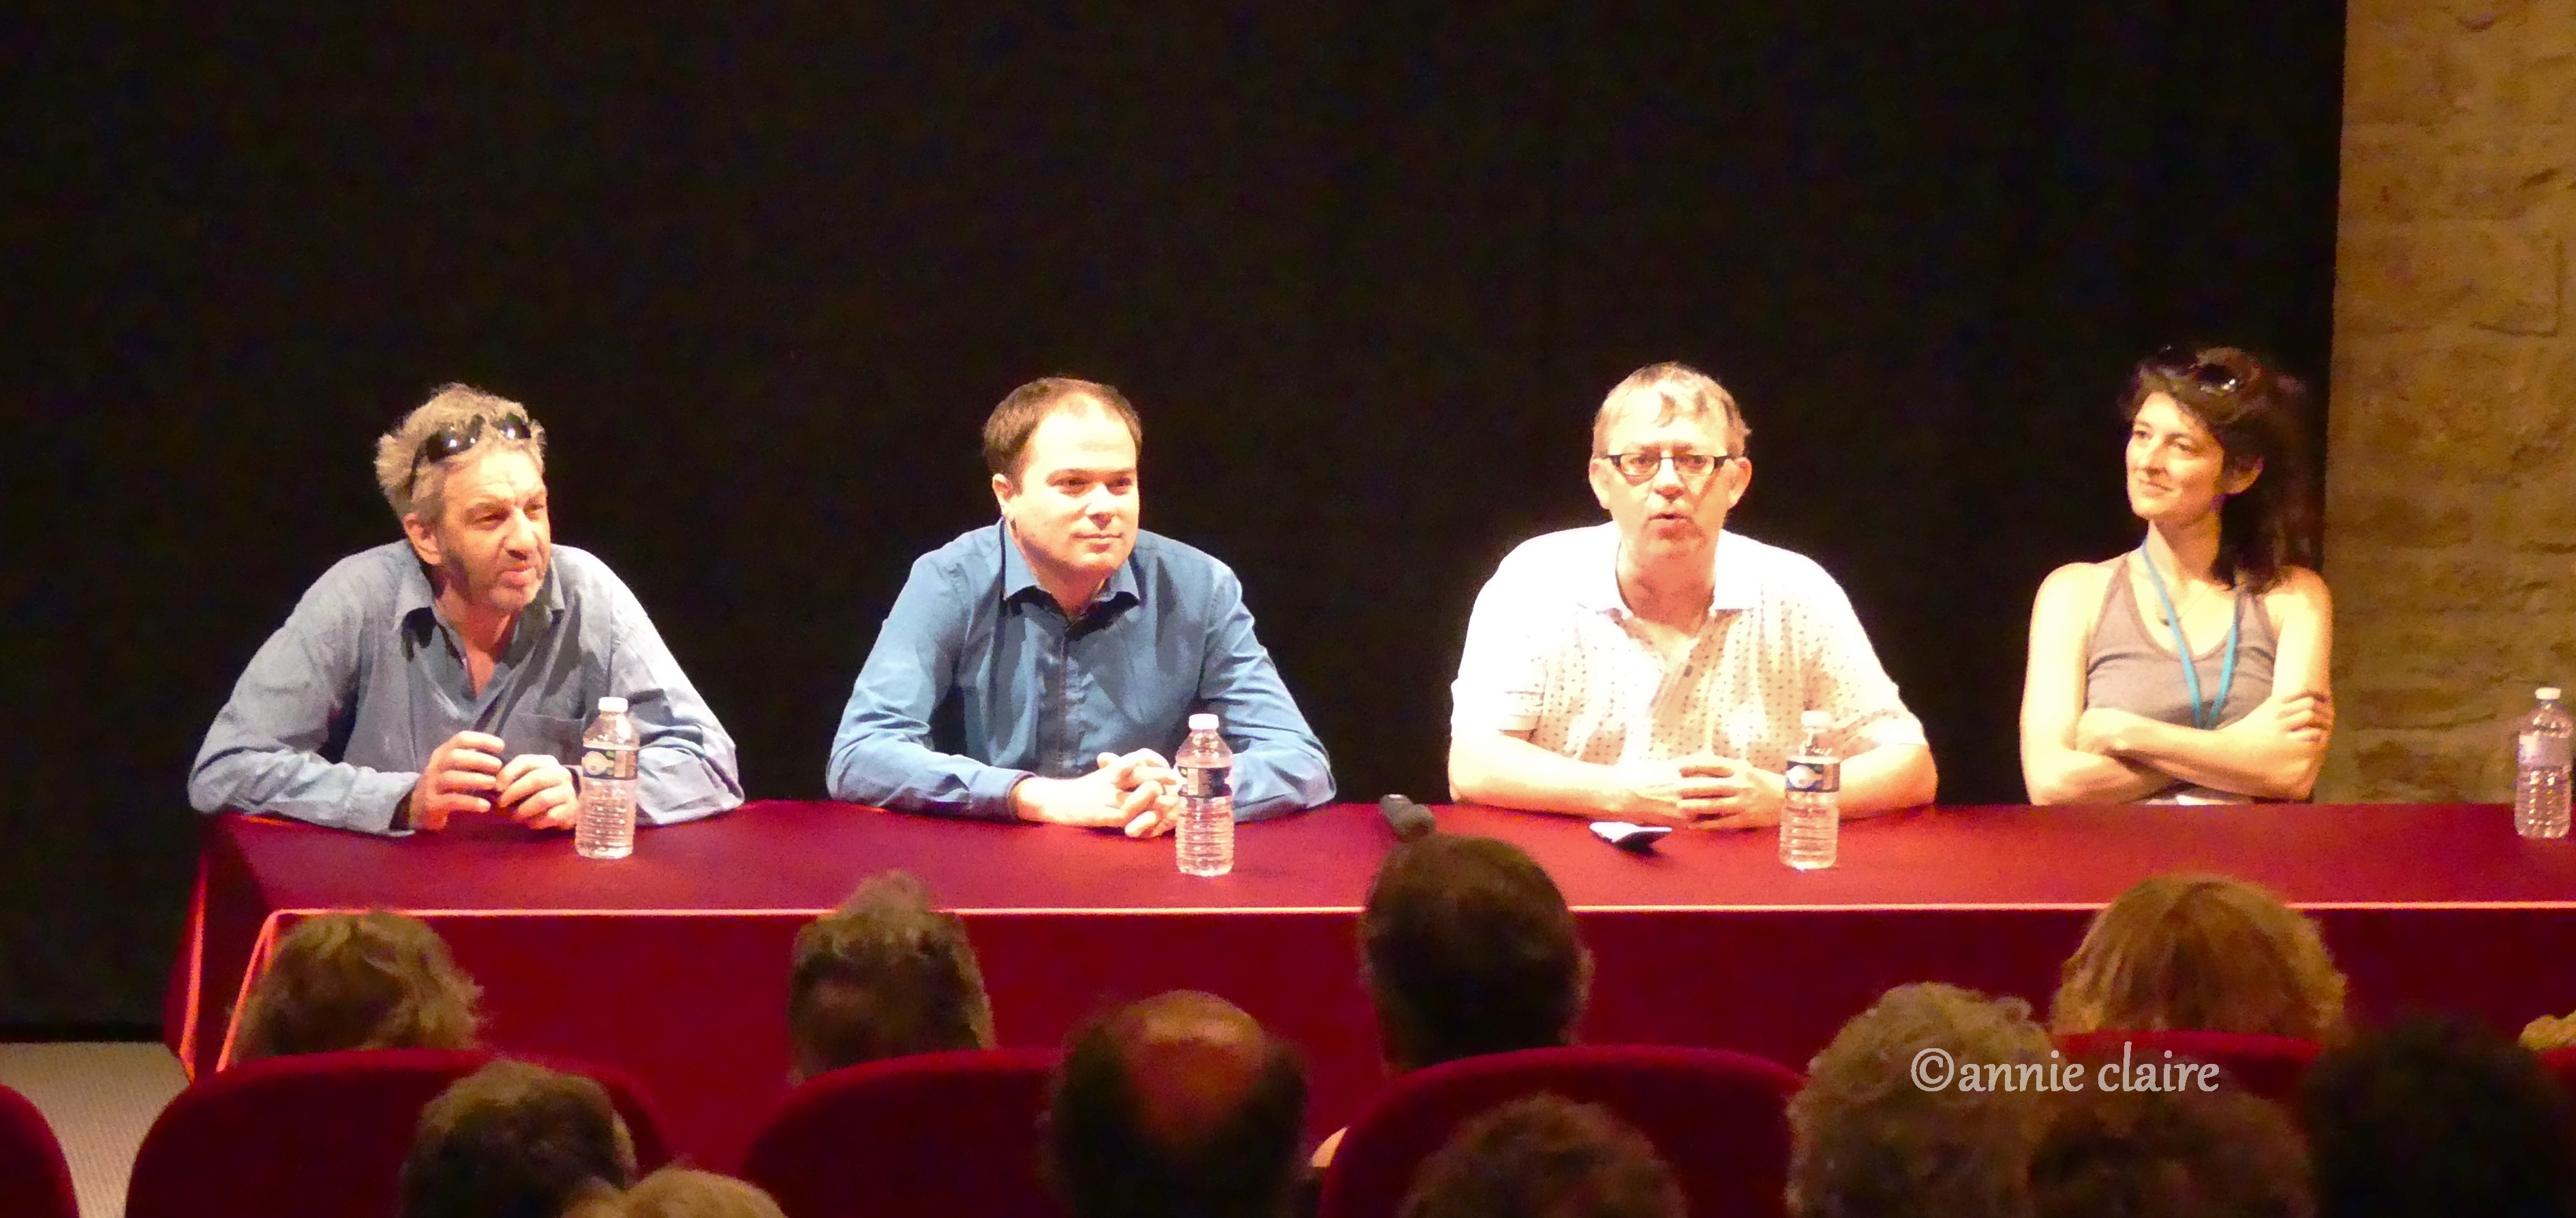 Philippe Guillard, Matthias Vincenot, Michel Kemper et Chloé Lacan ©annie claire 01.08.2016 Barjac